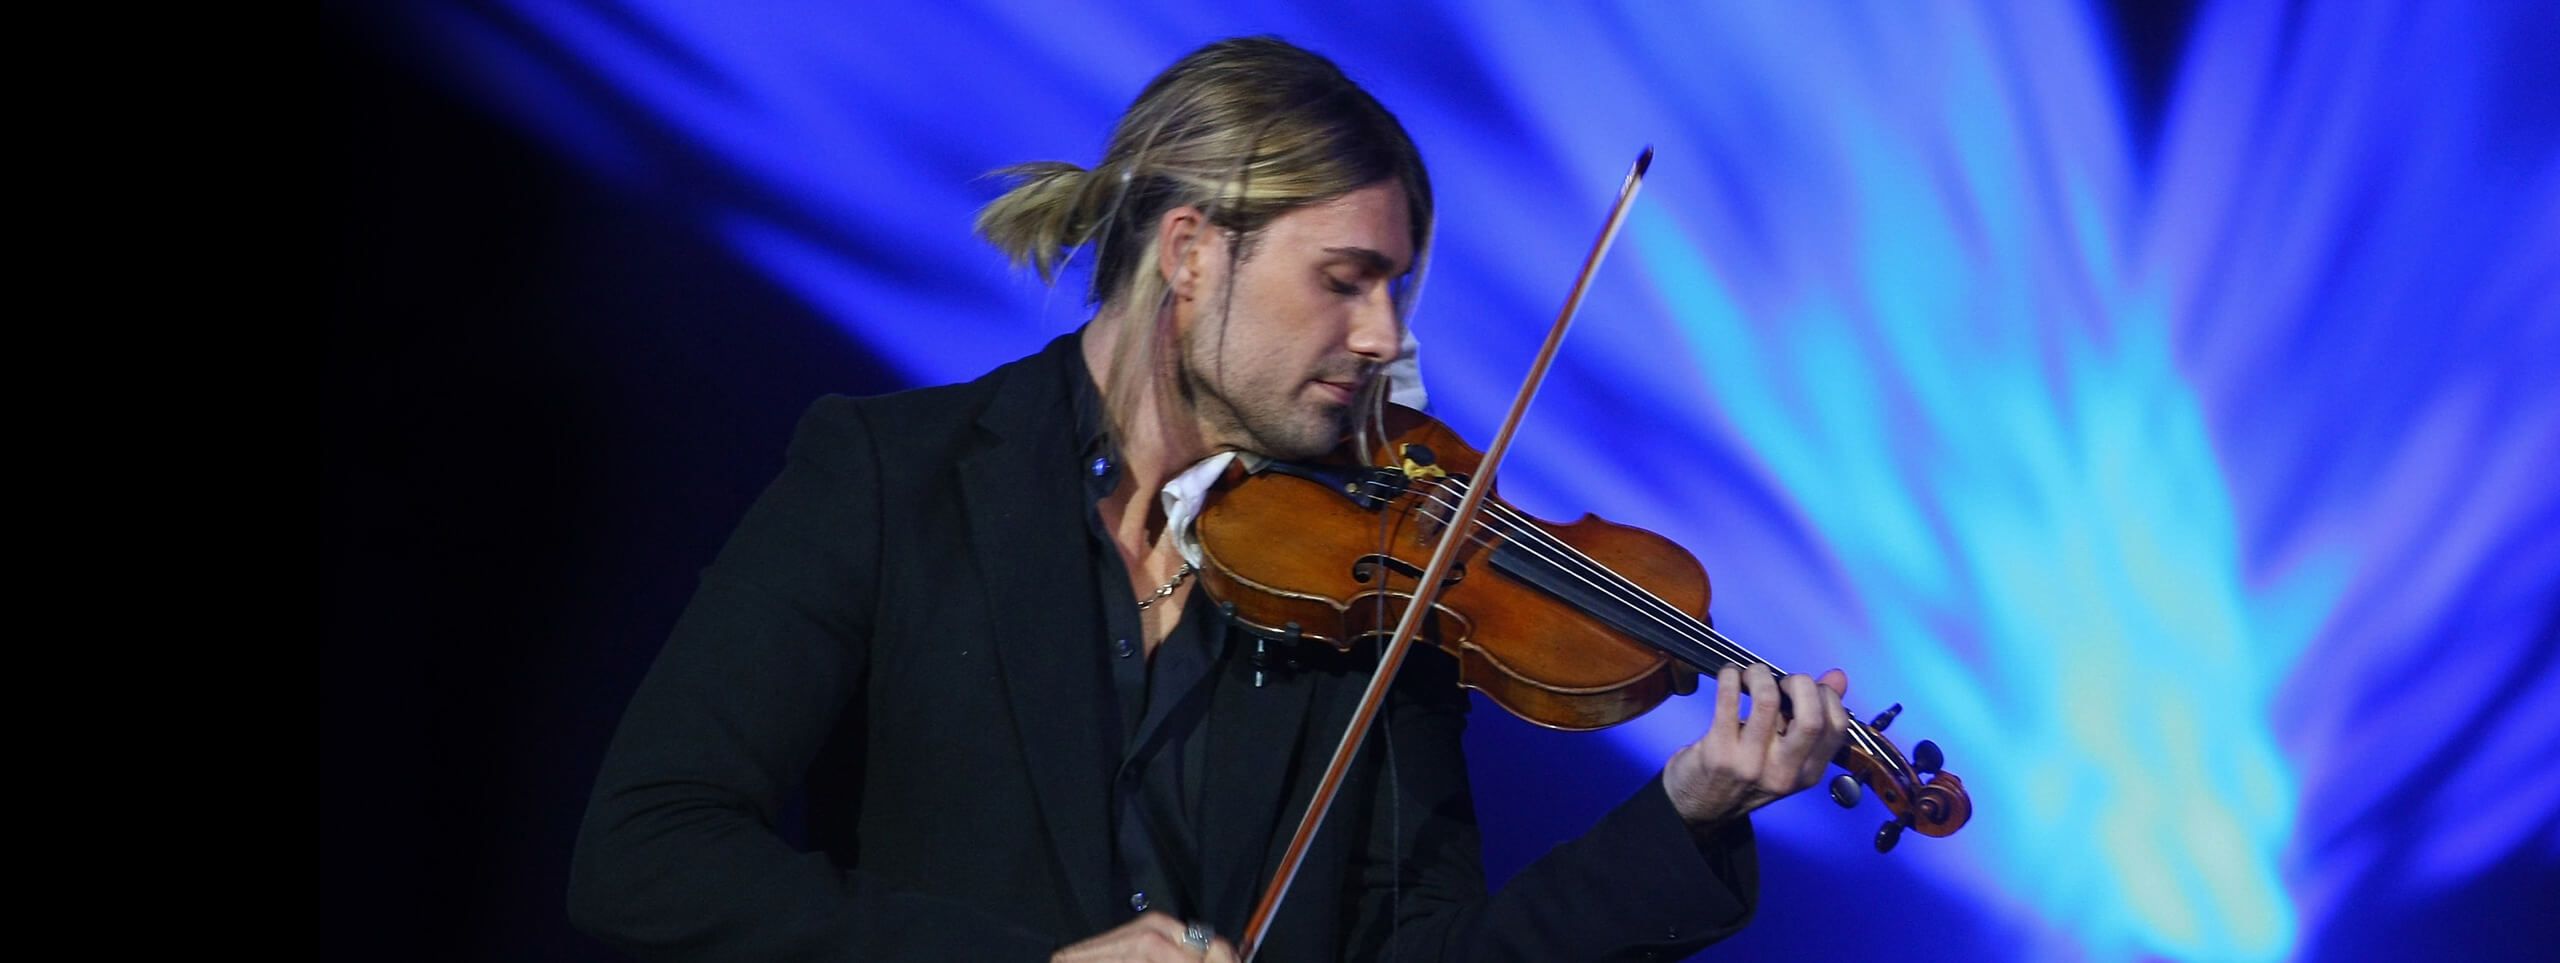 Homme blond queue de cheval jouant du violon